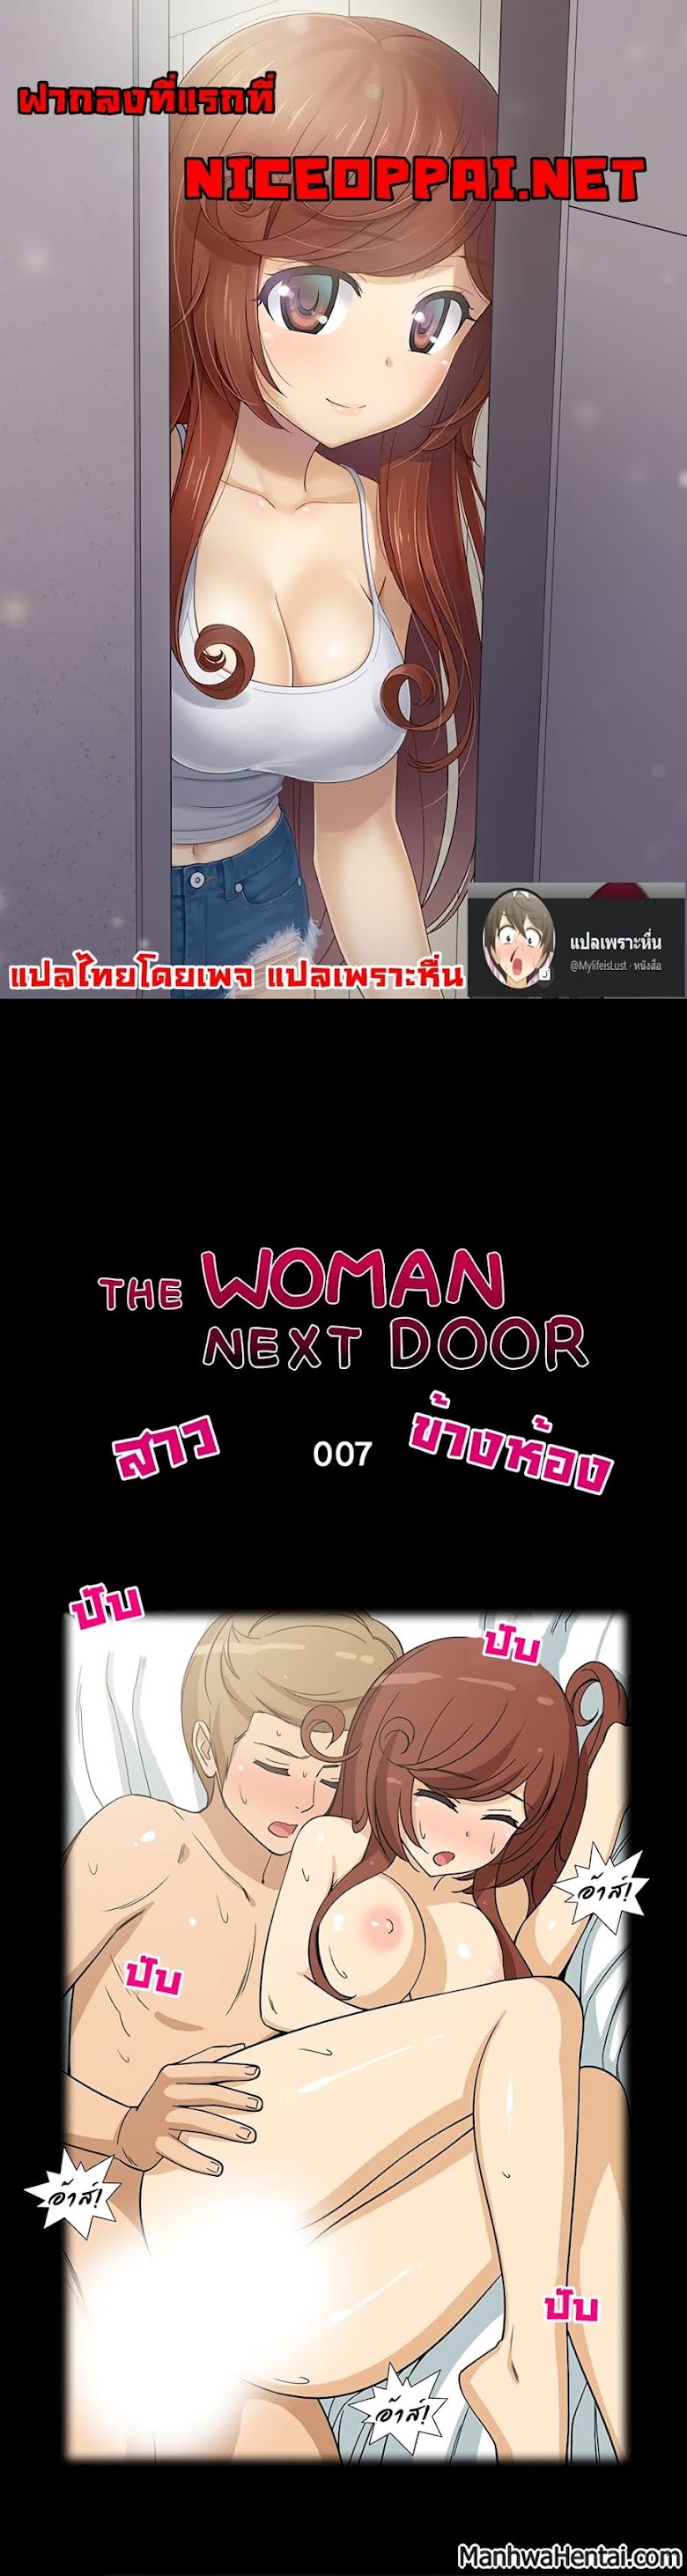 The Woman Next Door - หน้า 1